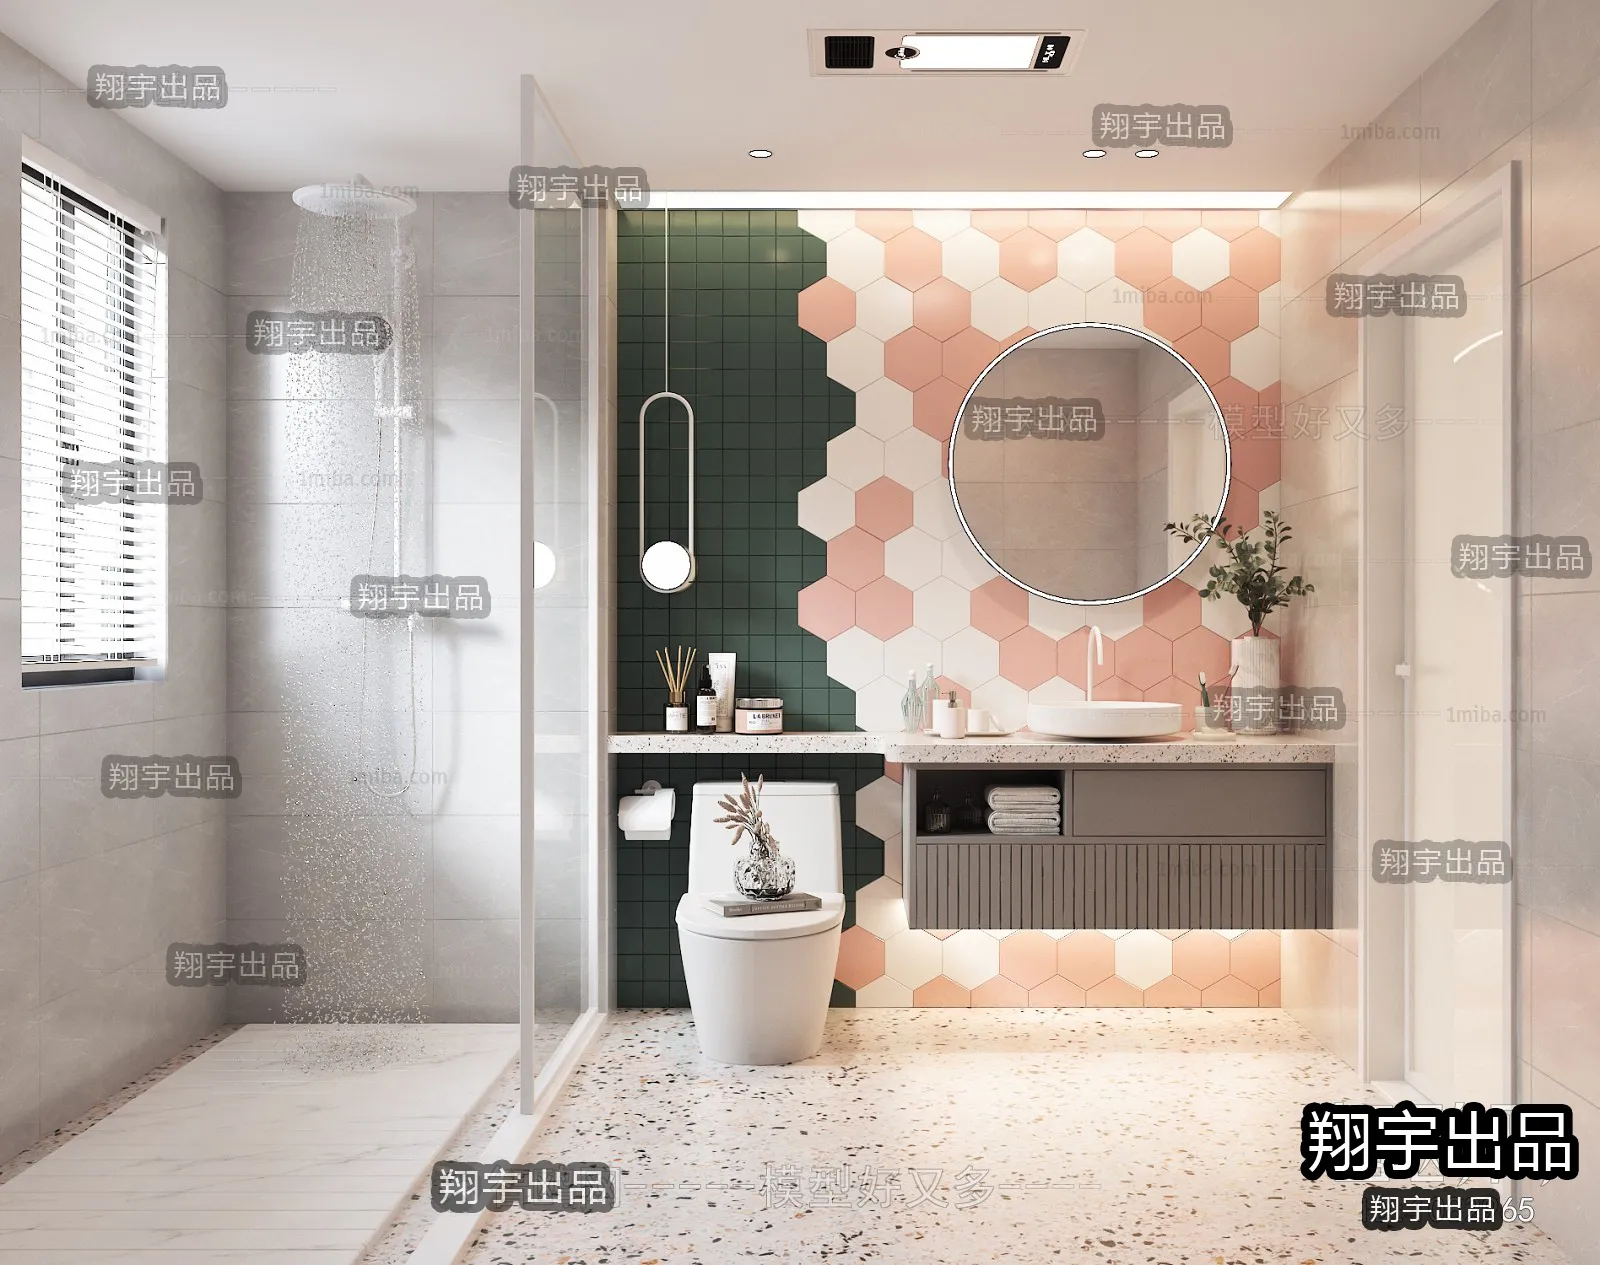 Bathroom – Scandinavian architecture – 004